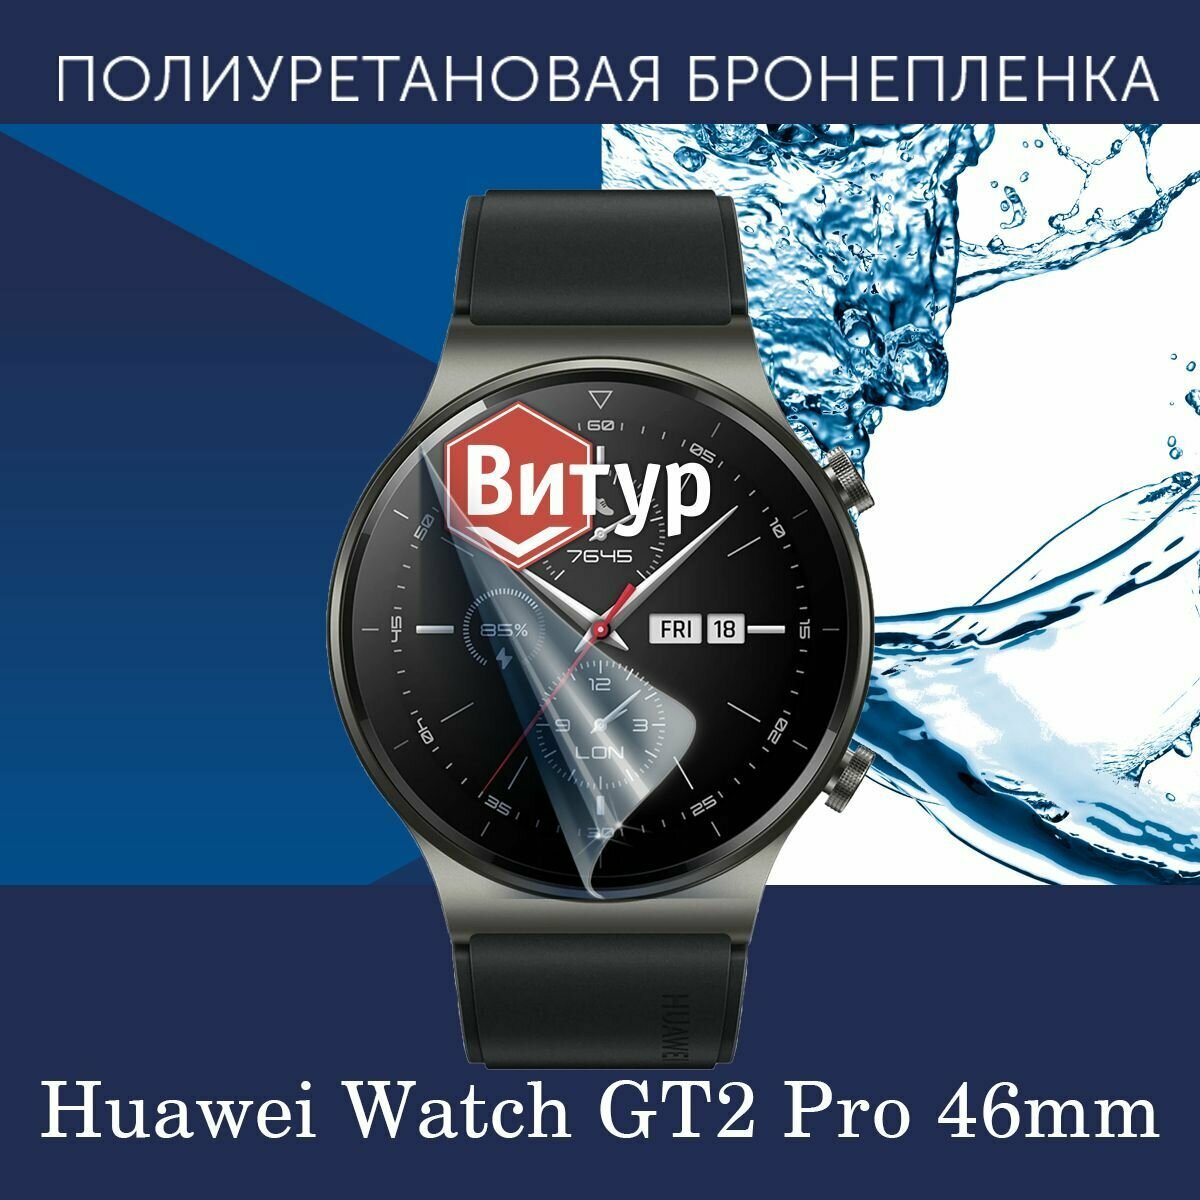 Полиуретановая бронепленка для смарт часов Huawei Watch GT2 Pro 46mm / Защитная пленка для Хуавей ГТ2 Про 46мм / Глянцевая